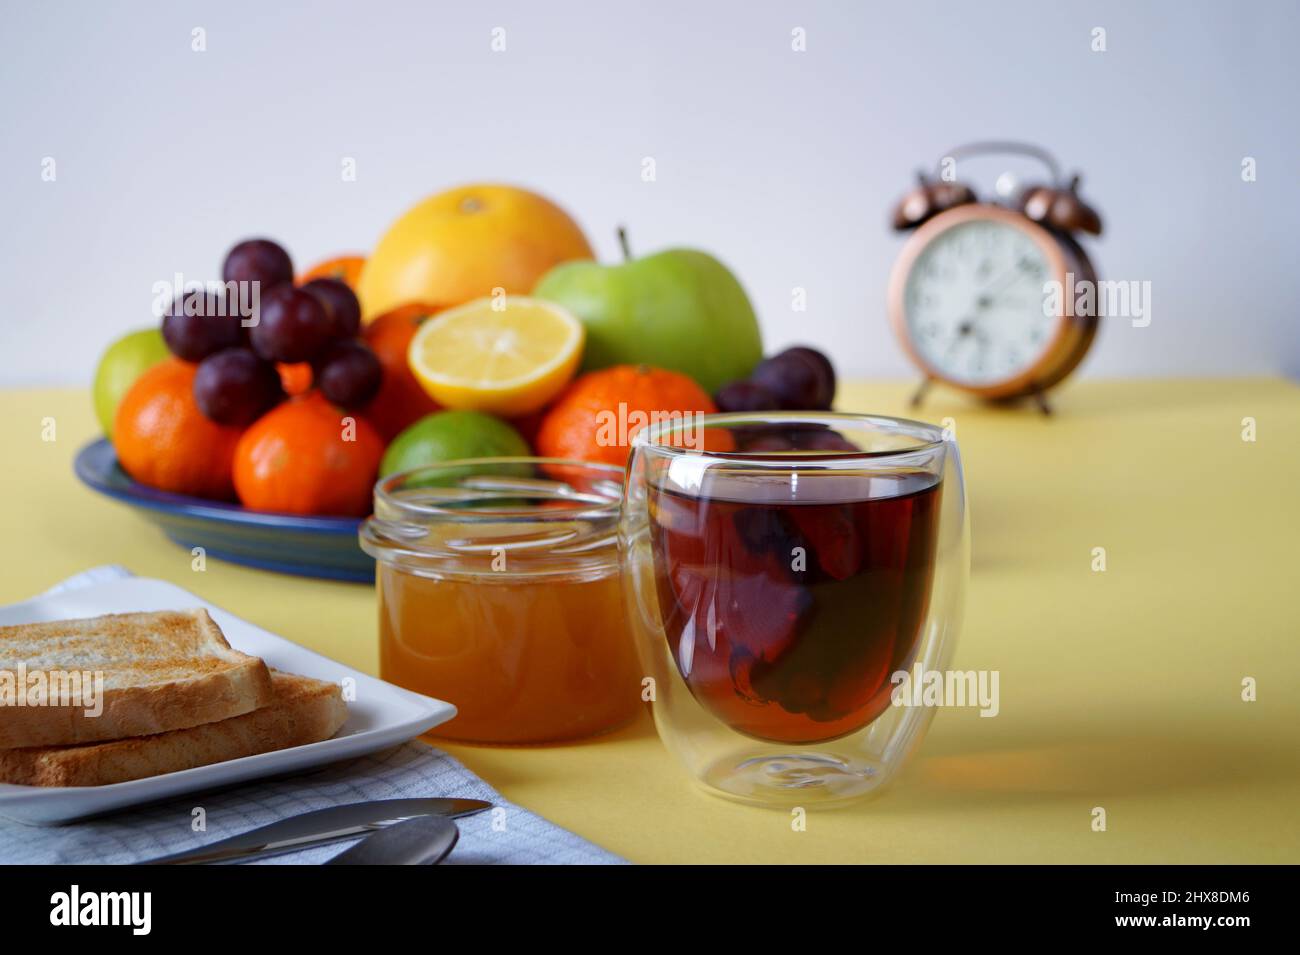 Le thé avec du pain grillé, du miel et des fruits est un excellent début de journée Banque D'Images